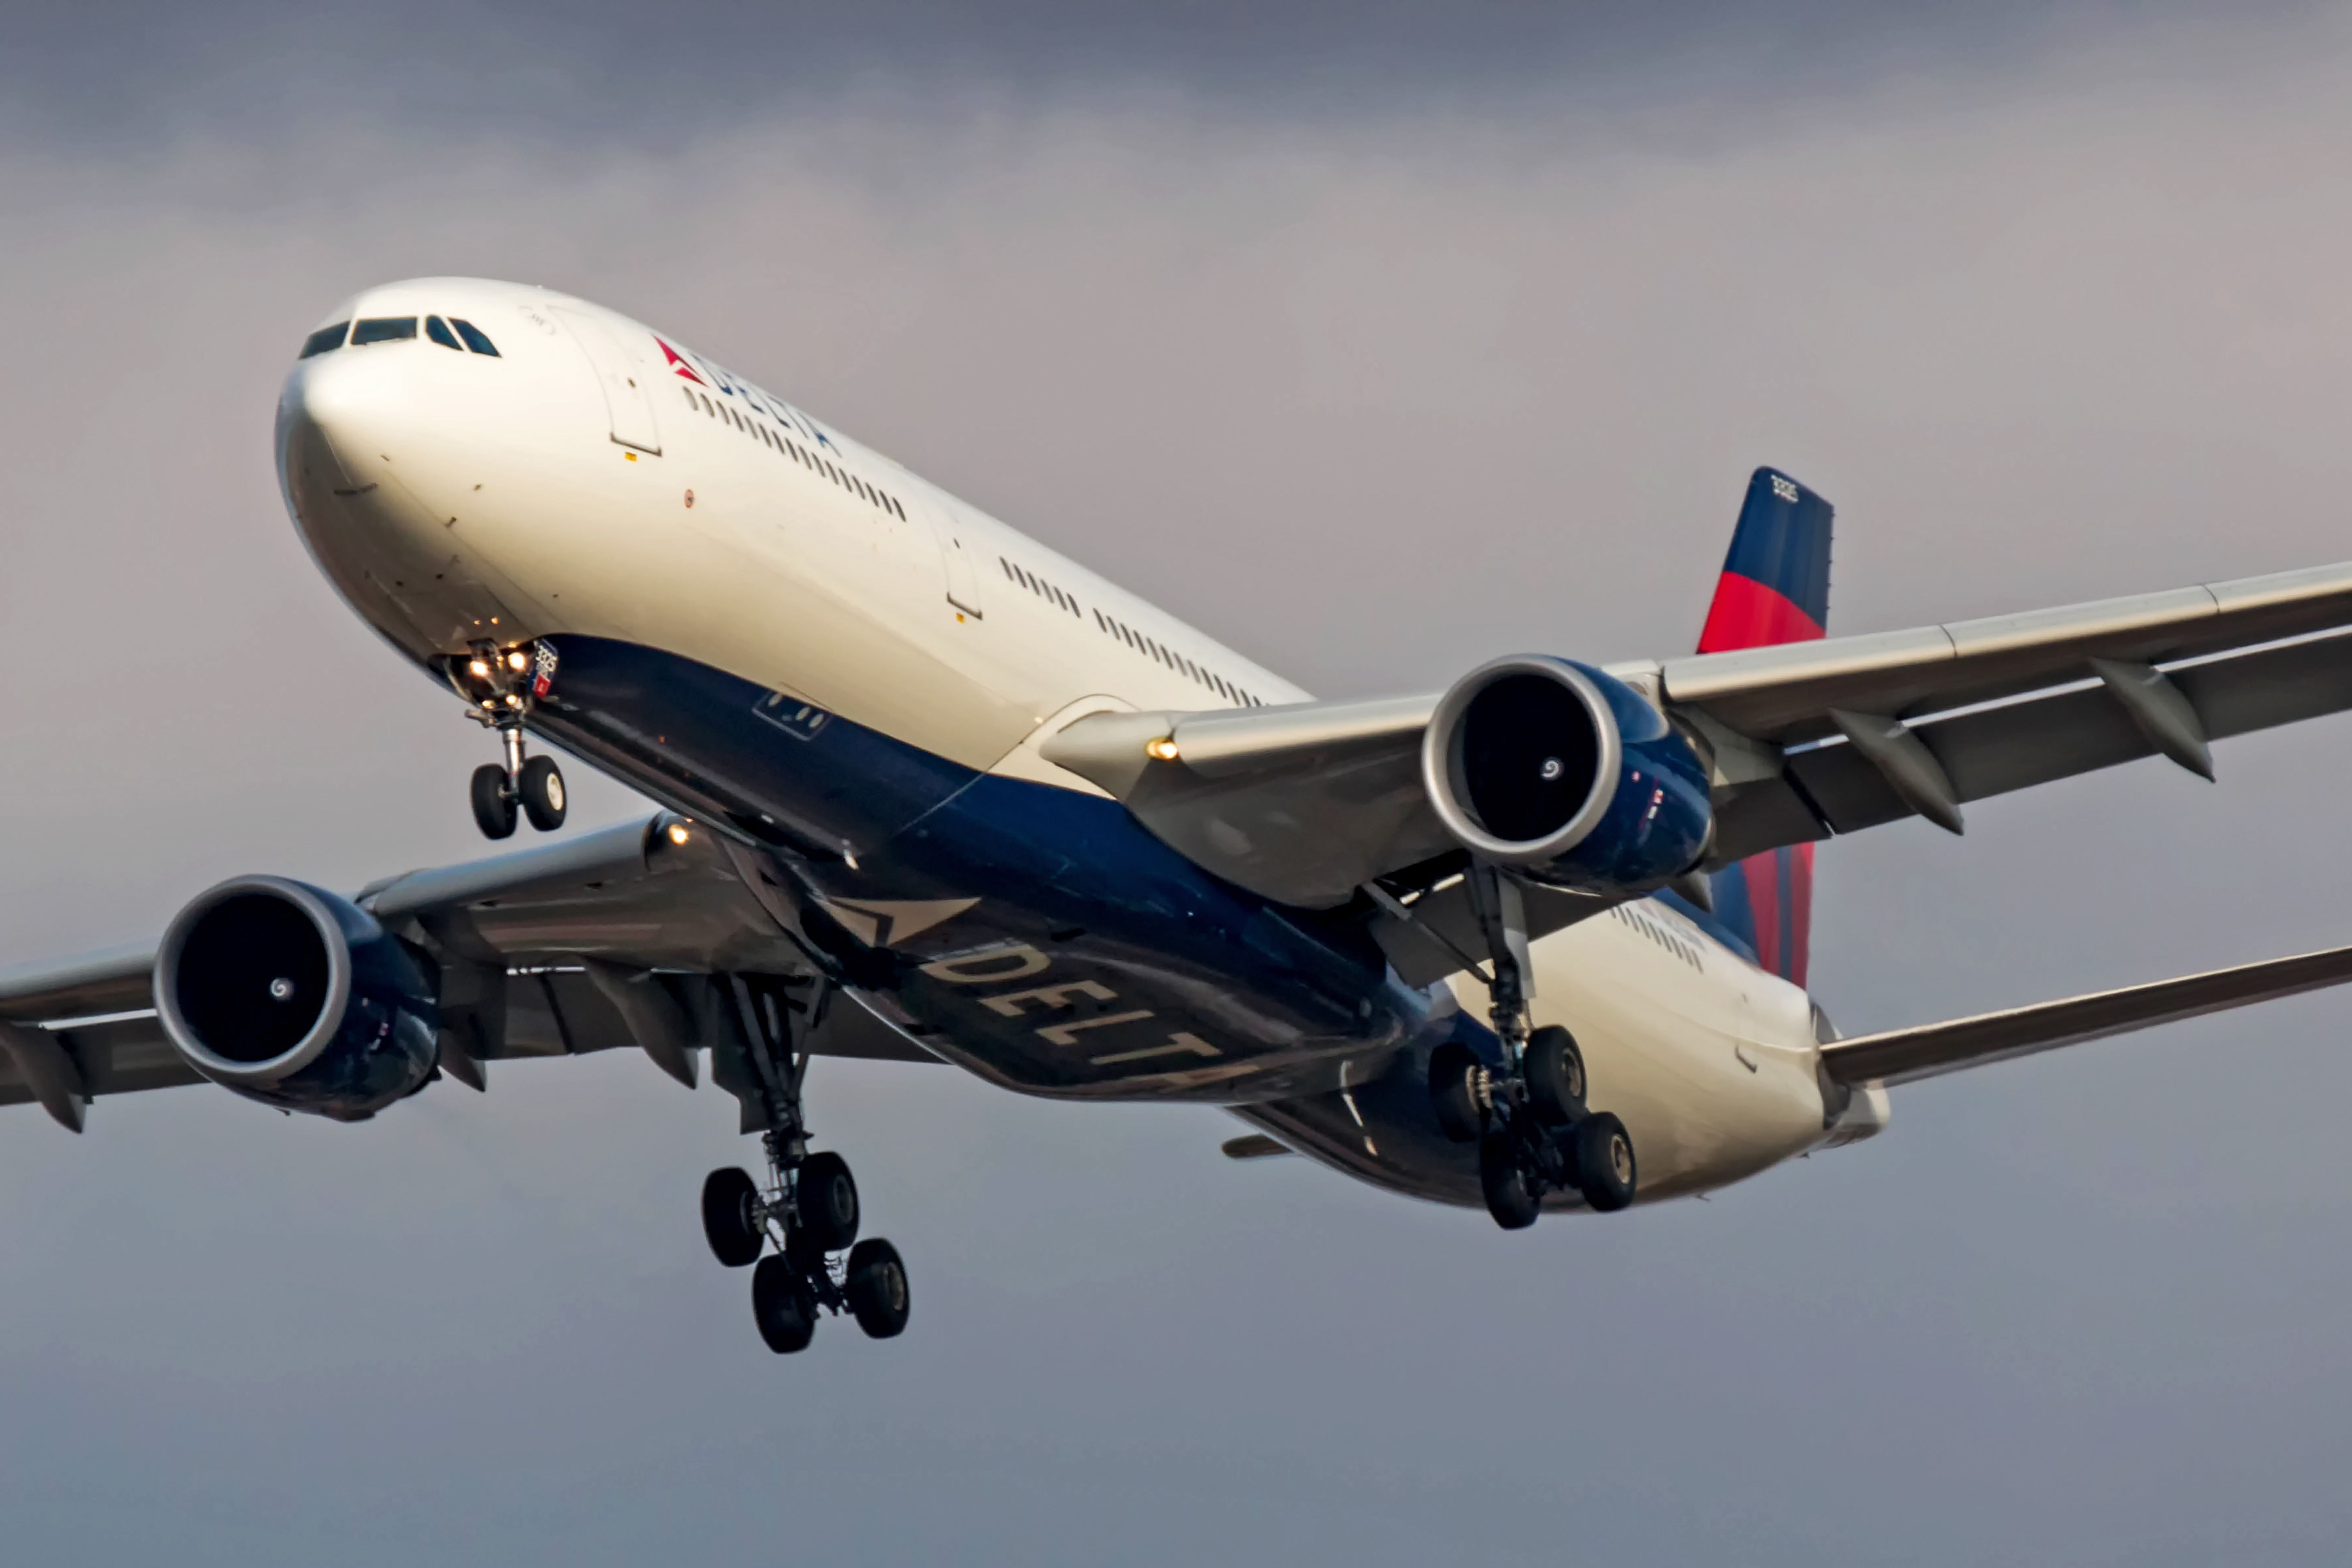 Delta A330-300 landing